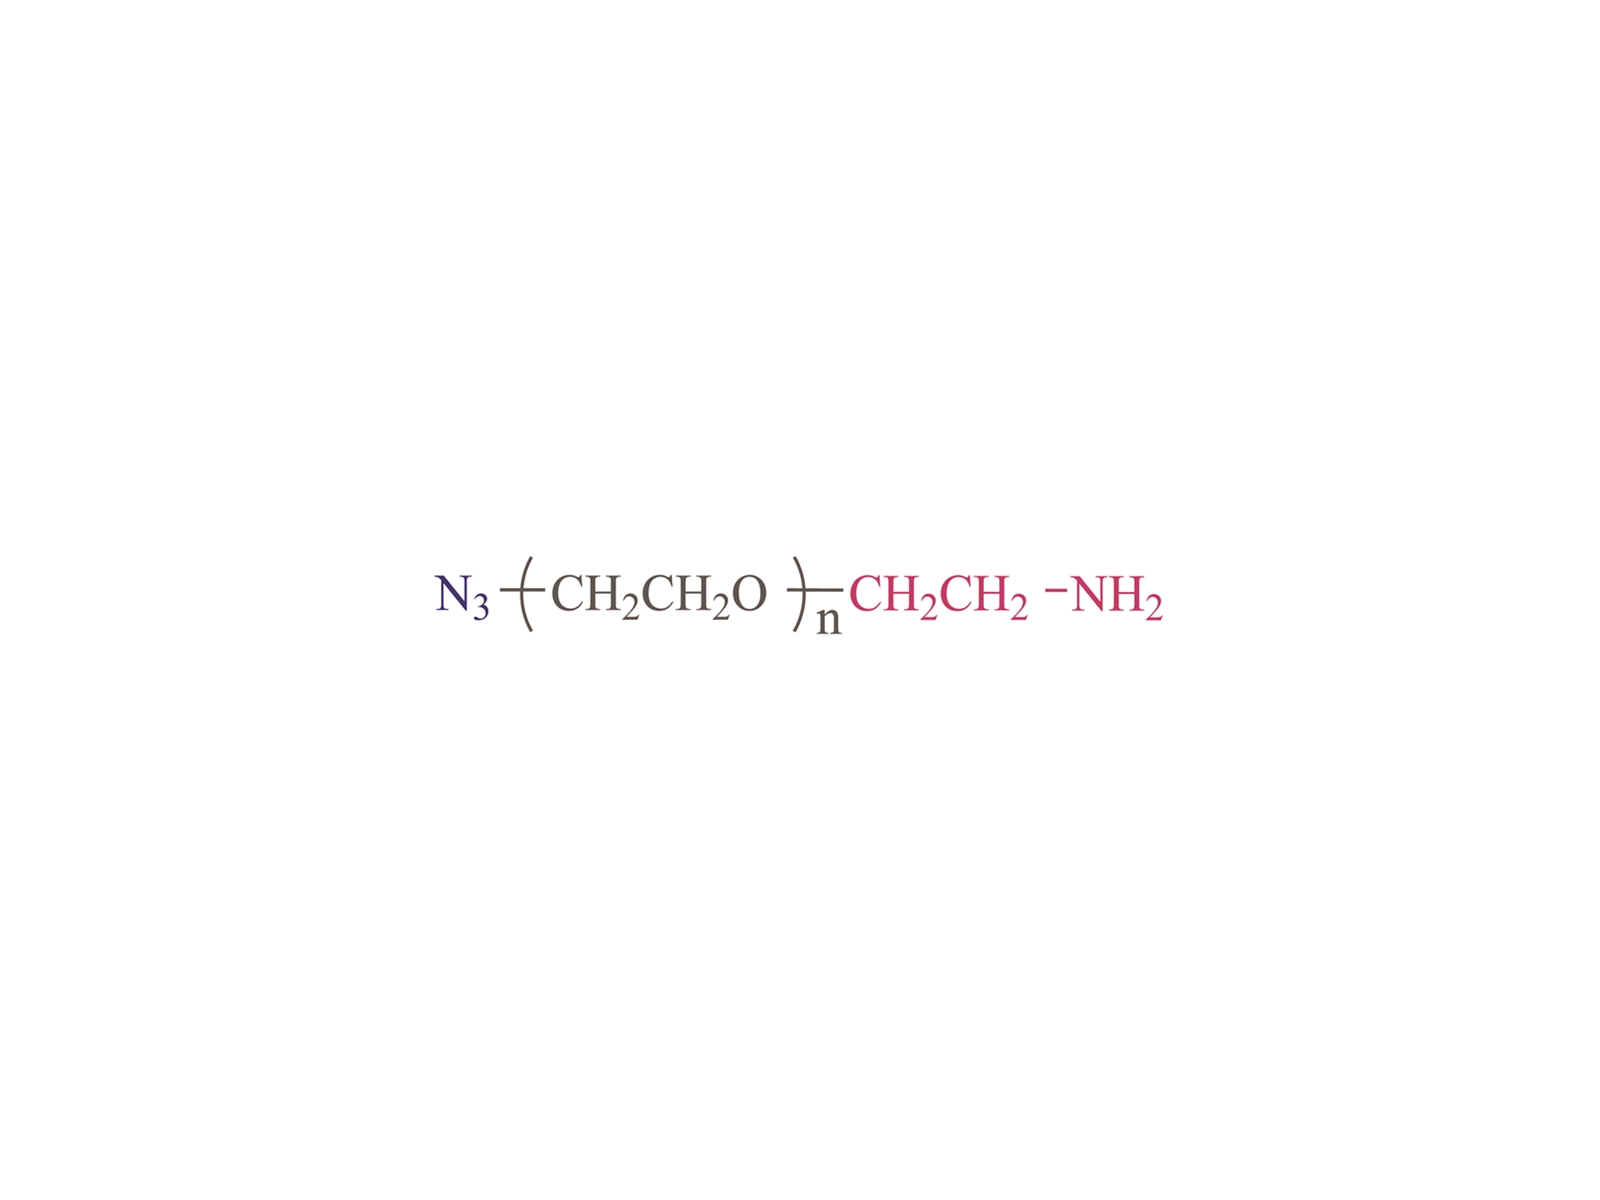 α-azido-ω-amino poly (éthylène glycol) [N3-PEG-NH2] CAS: 464190-91-8 1866388-57-4.134179-38-7 951671-92-4 516493-93-9, 957486-82-7.1333154-77-0 857891-82-8 912849-73-11800414-71-4